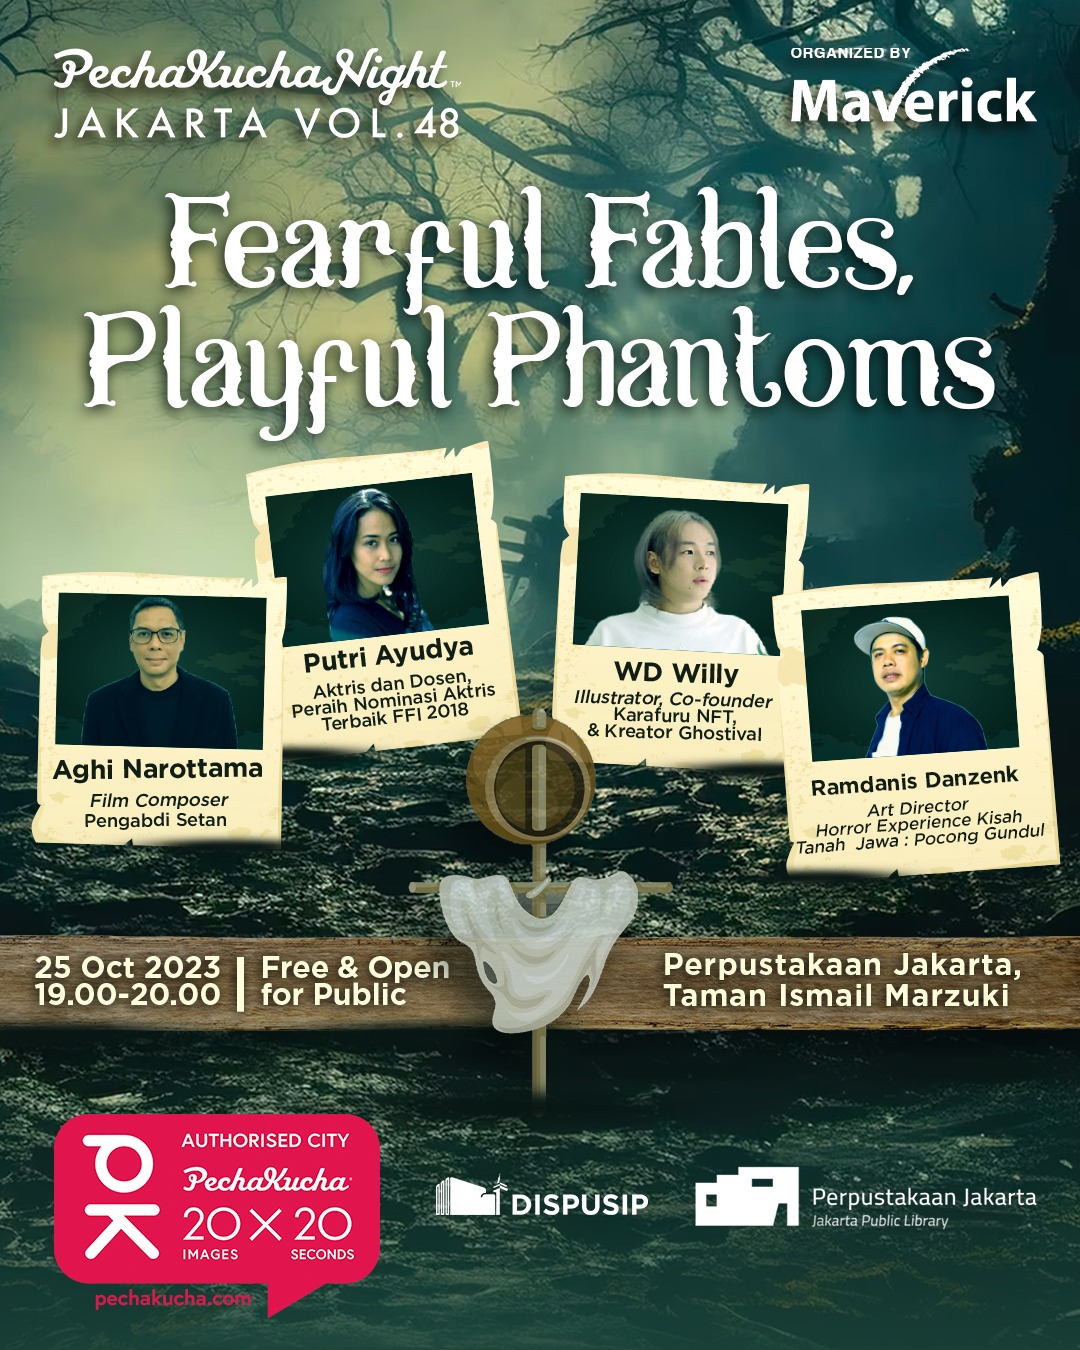 PechaKucha Night Jakarta Vol.48 "Fearful Fables, Playful Phantoms"